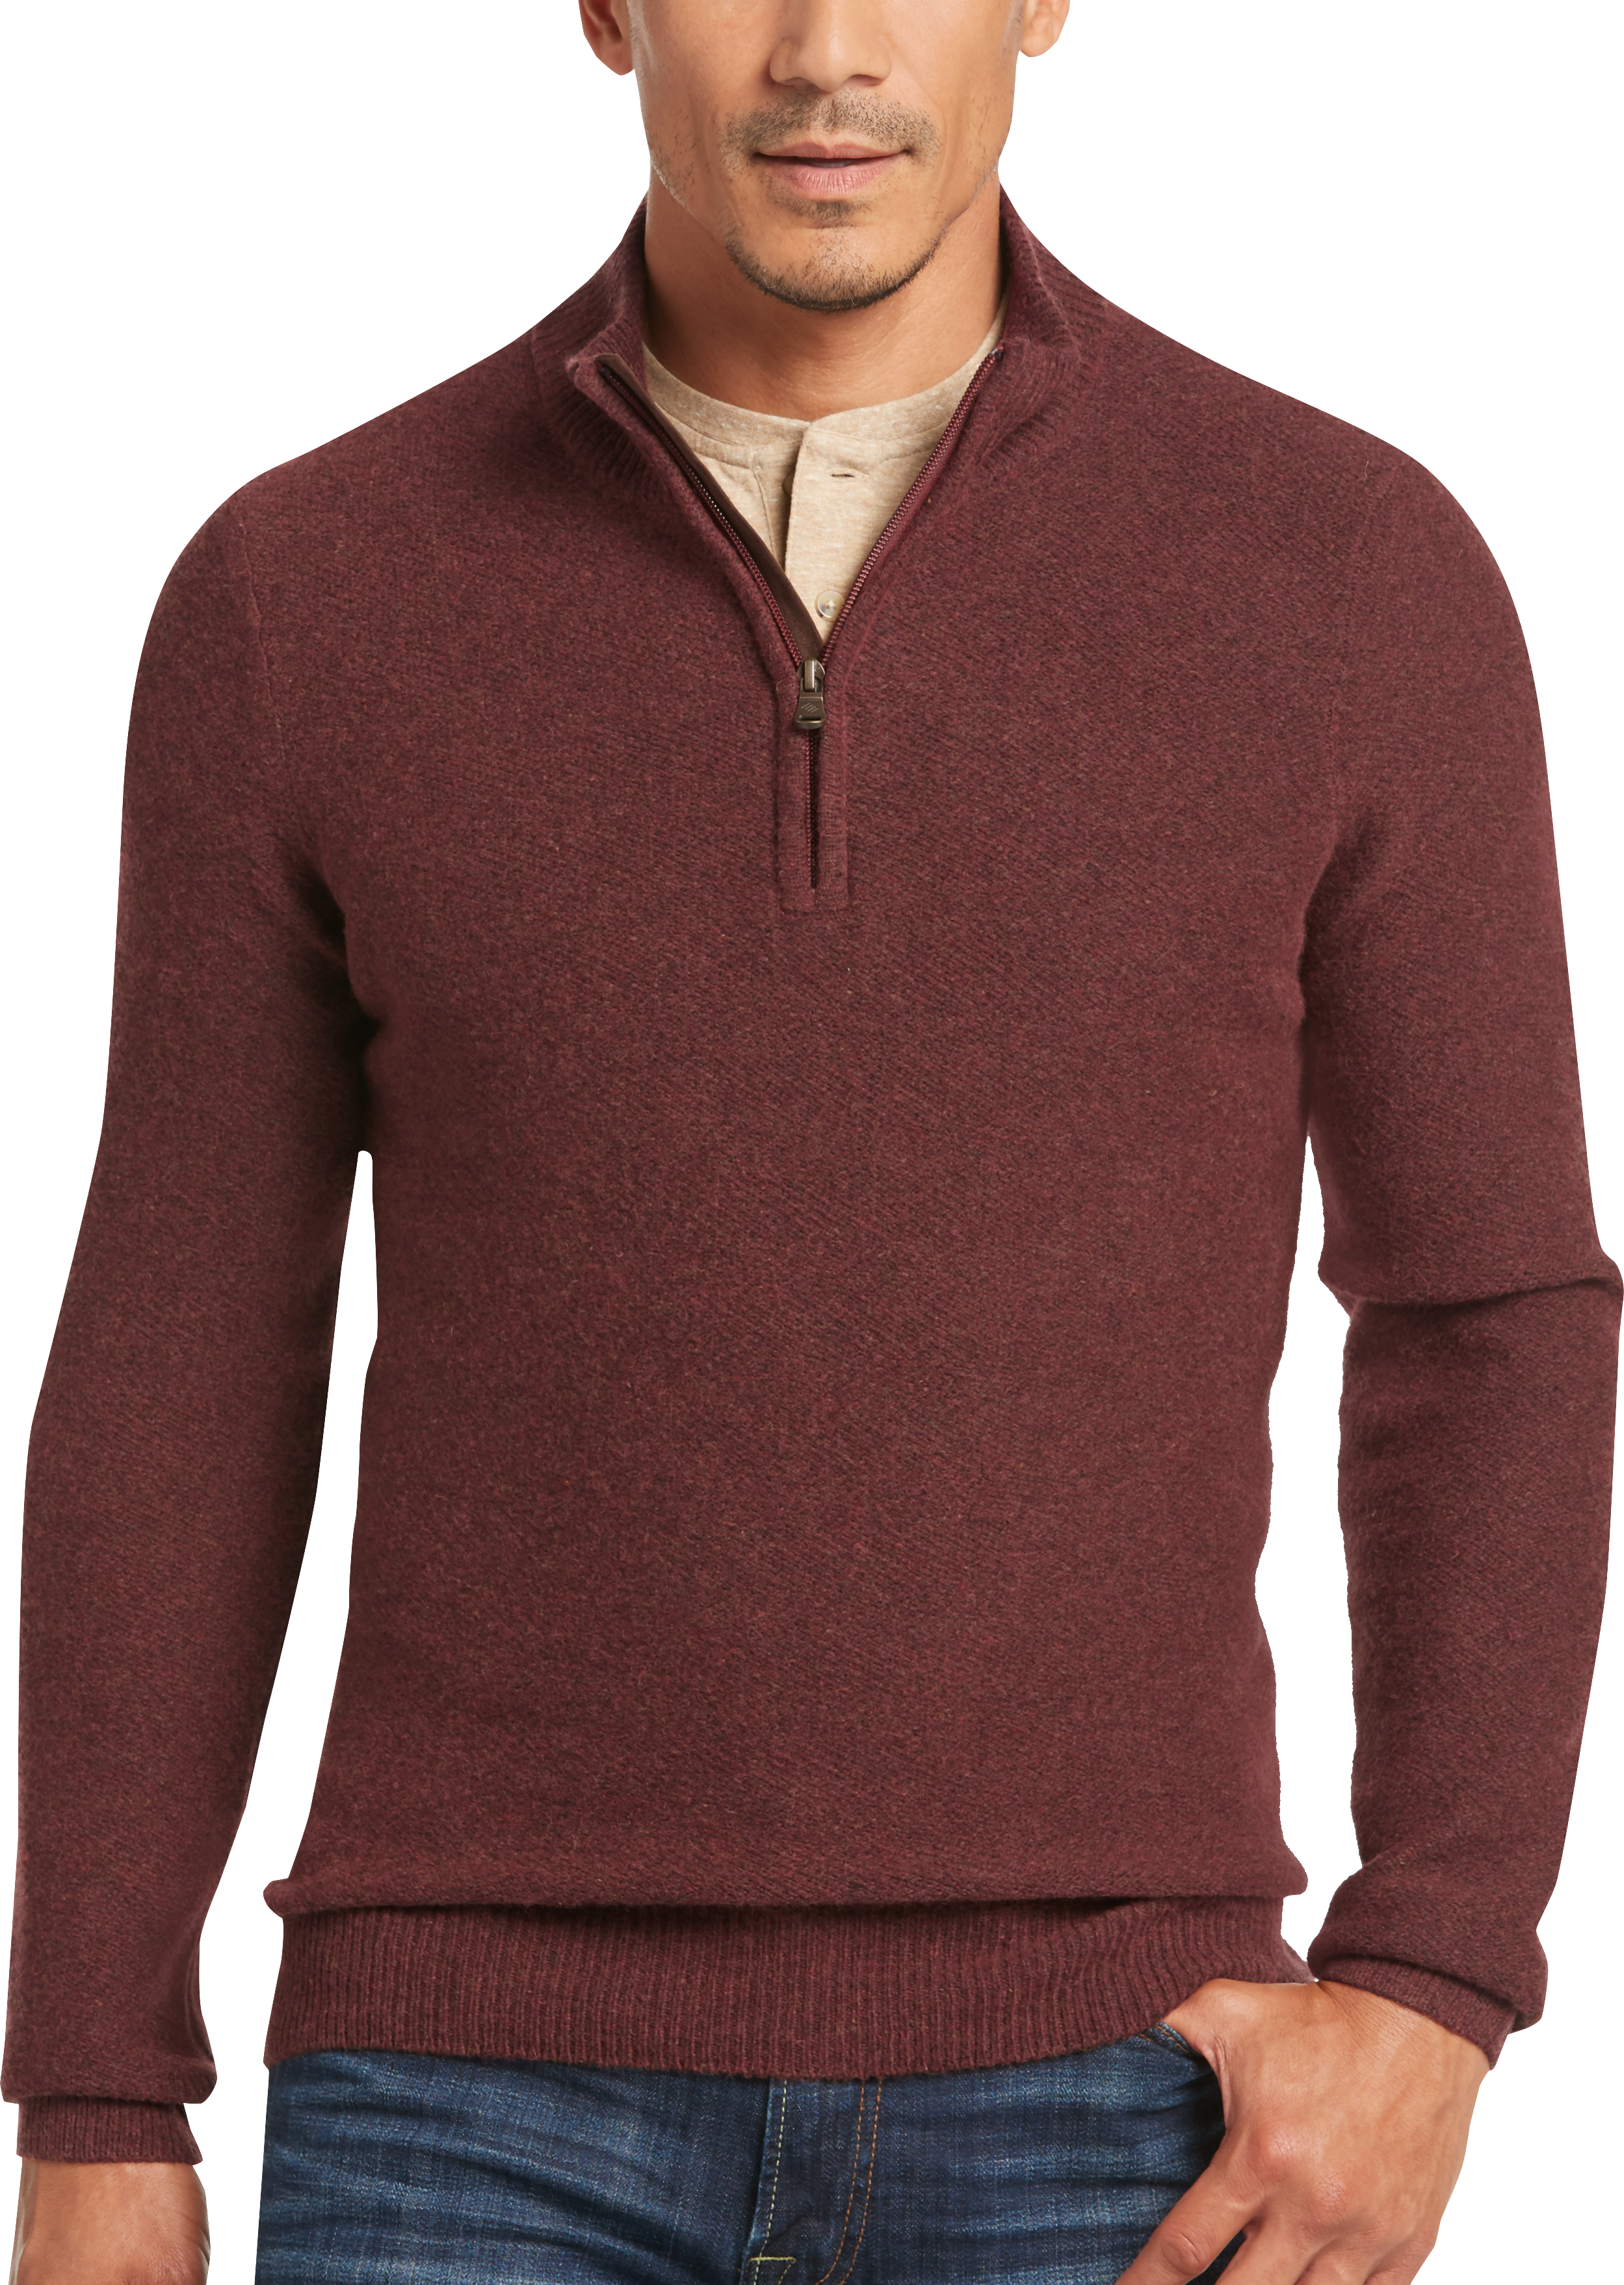 Joseph Abboud Rust Mock-Neck 1/2 Zip Sweater - Men's Sweaters | Men's ...